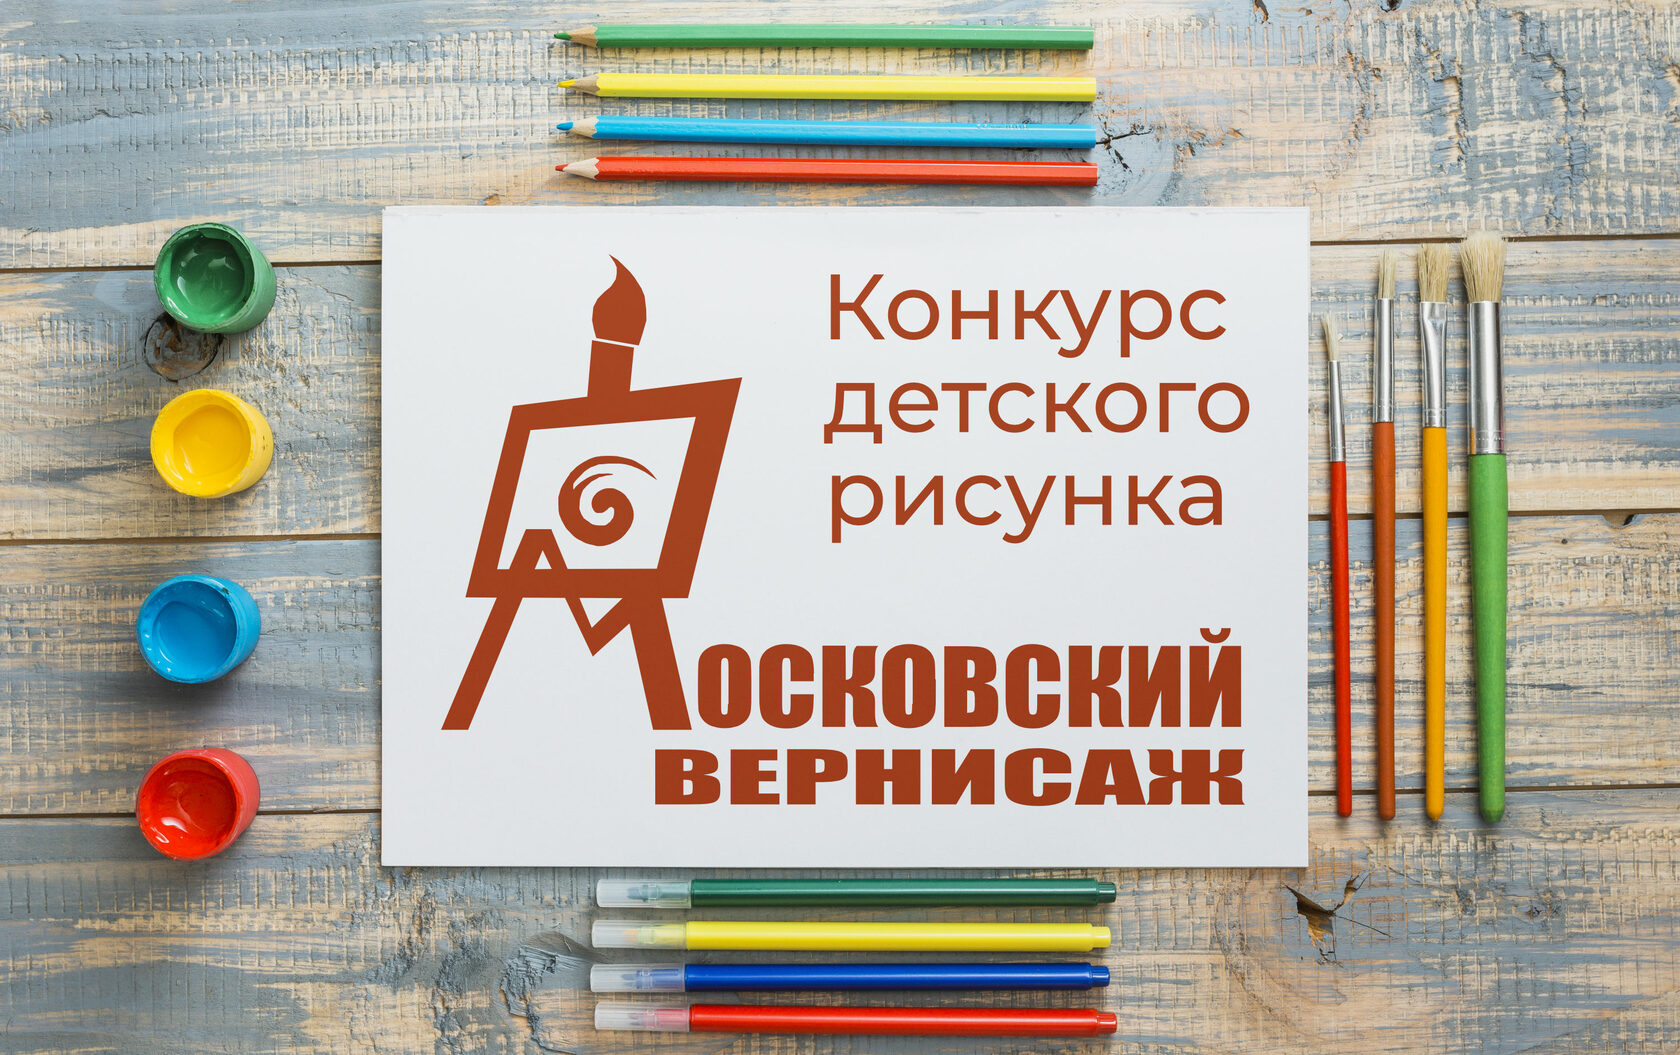 Московский Вернисаж конкурс детского рисунка